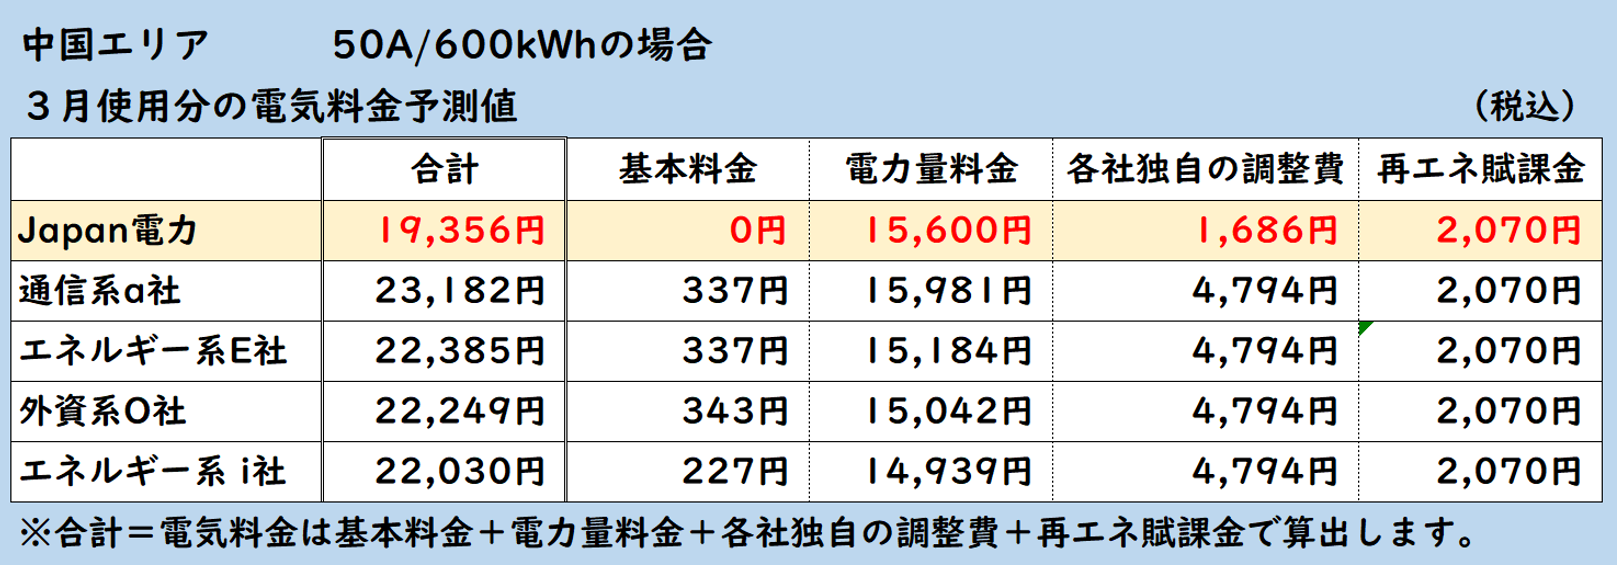 広島、岡山で50A600kwhを1か月でお使いのご家庭では、auでんきと比べてお得、エネオスでんきと比べてお得、ループと比べてお得、オクトパスエナジーと比べてお得、出光でんきと比べてお得